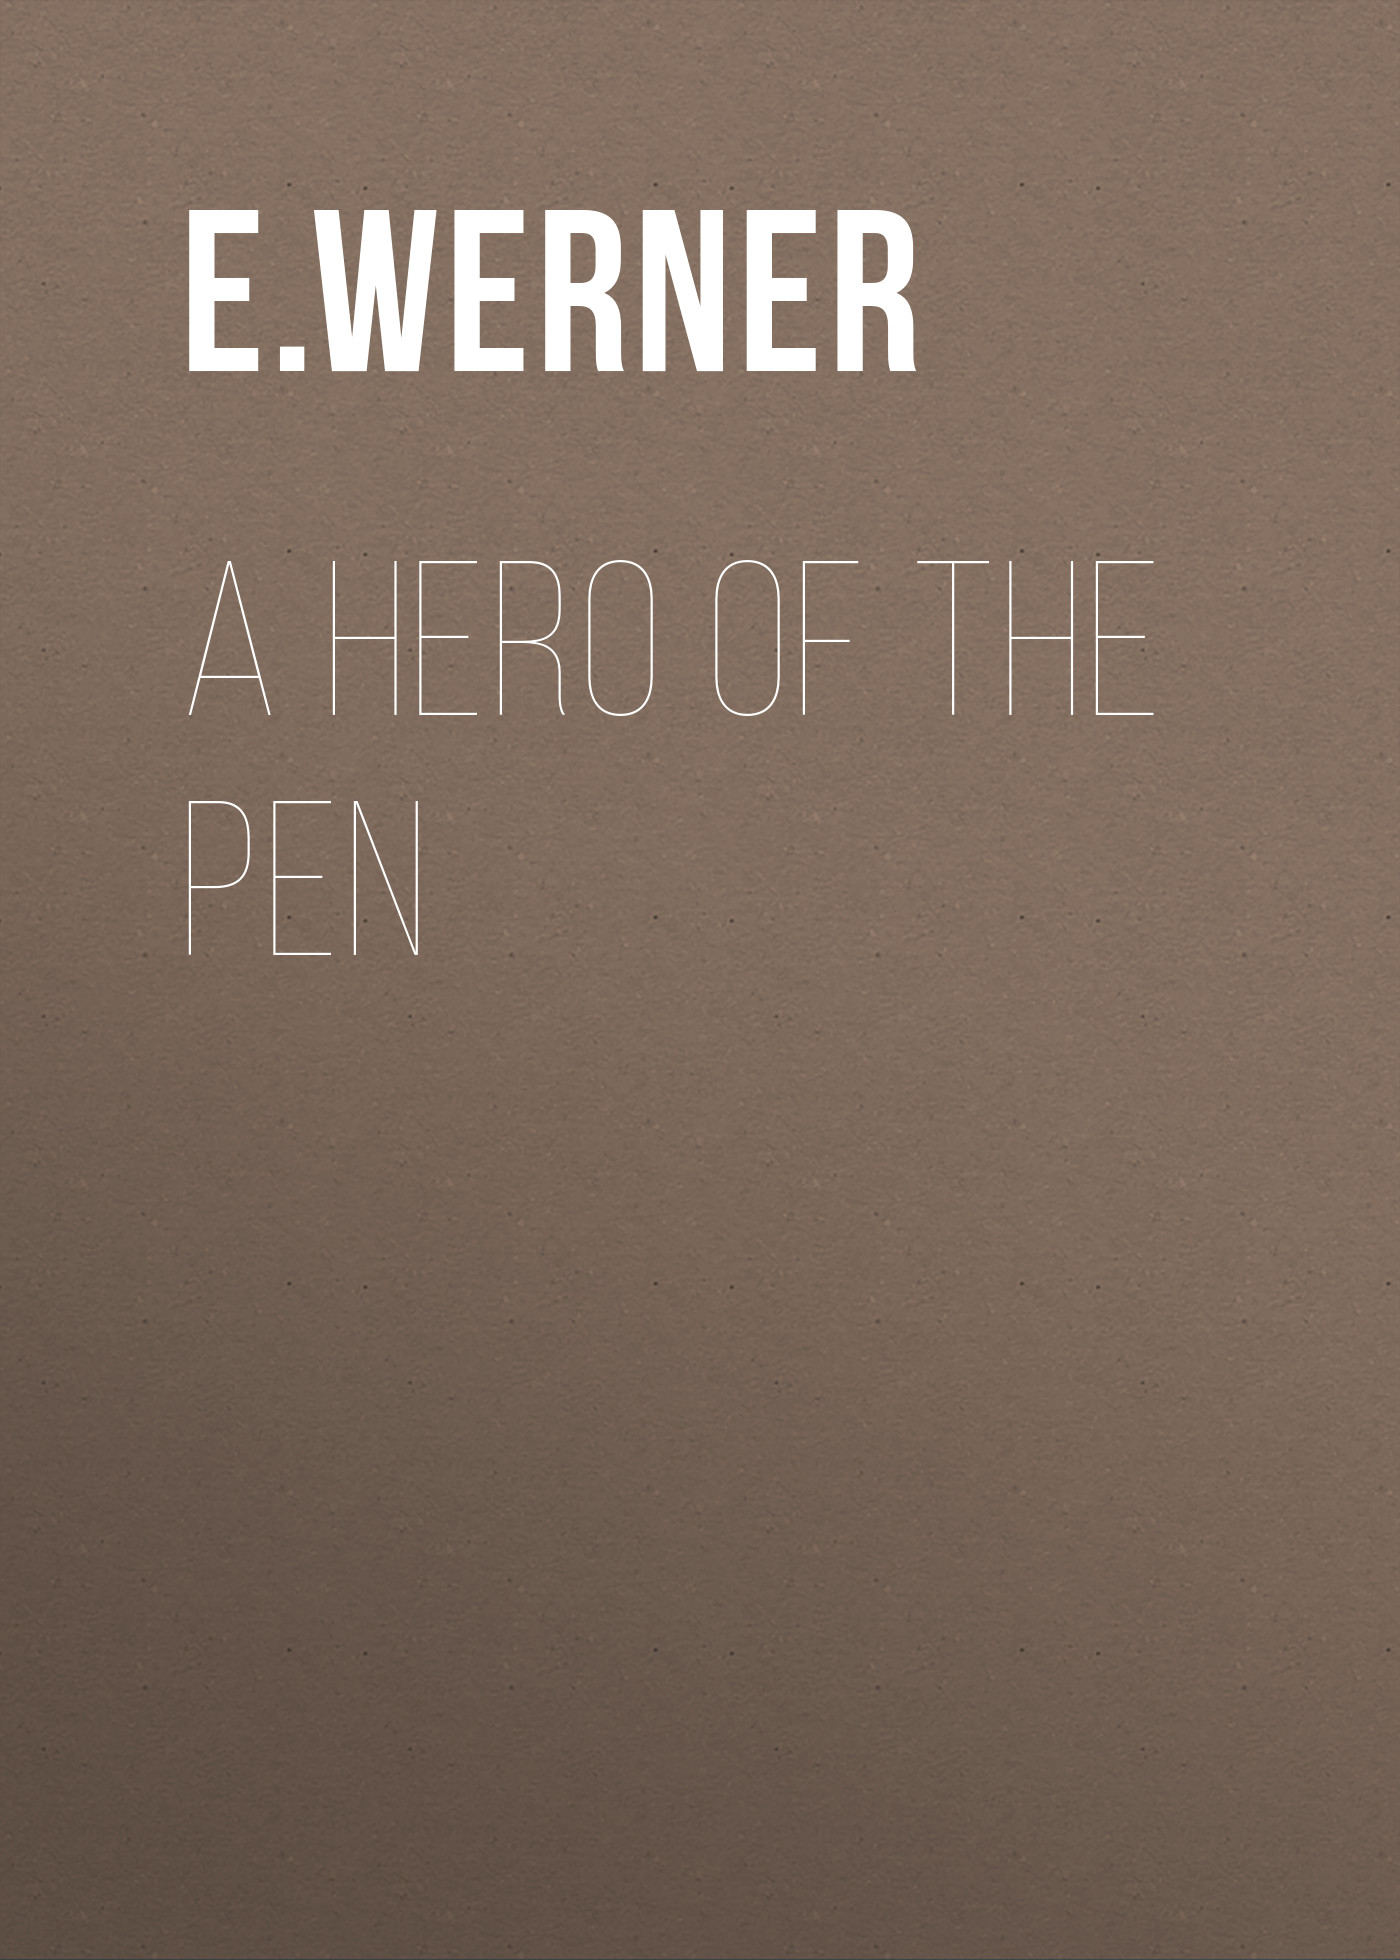 Книга A Hero of the Pen из серии , созданная E. Werner, может относится к жанру Зарубежная классика, Зарубежная старинная литература. Стоимость электронной книги A Hero of the Pen с идентификатором 34337594 составляет 0 руб.